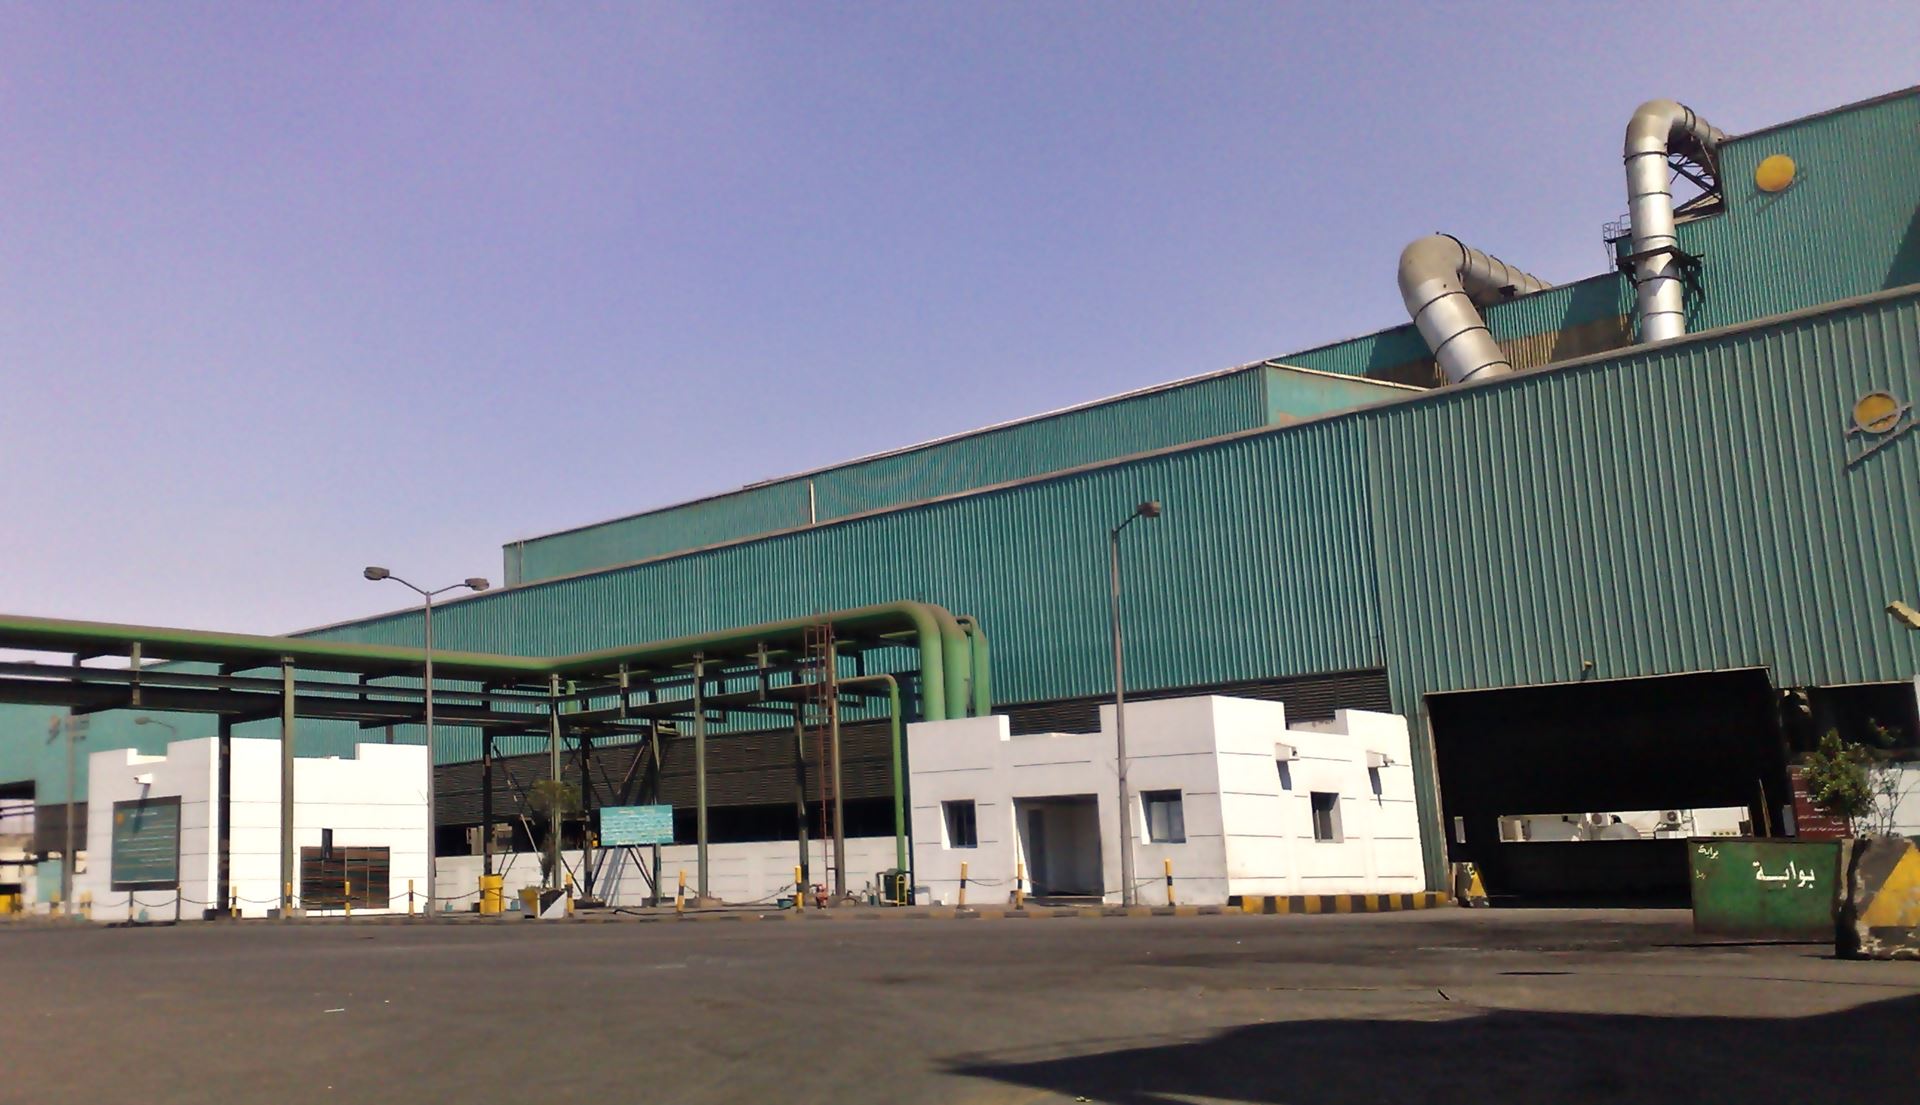 Ezz Steel, 2. çelikhaneyi 2023'ün başlarında işletmeyi planlıyor